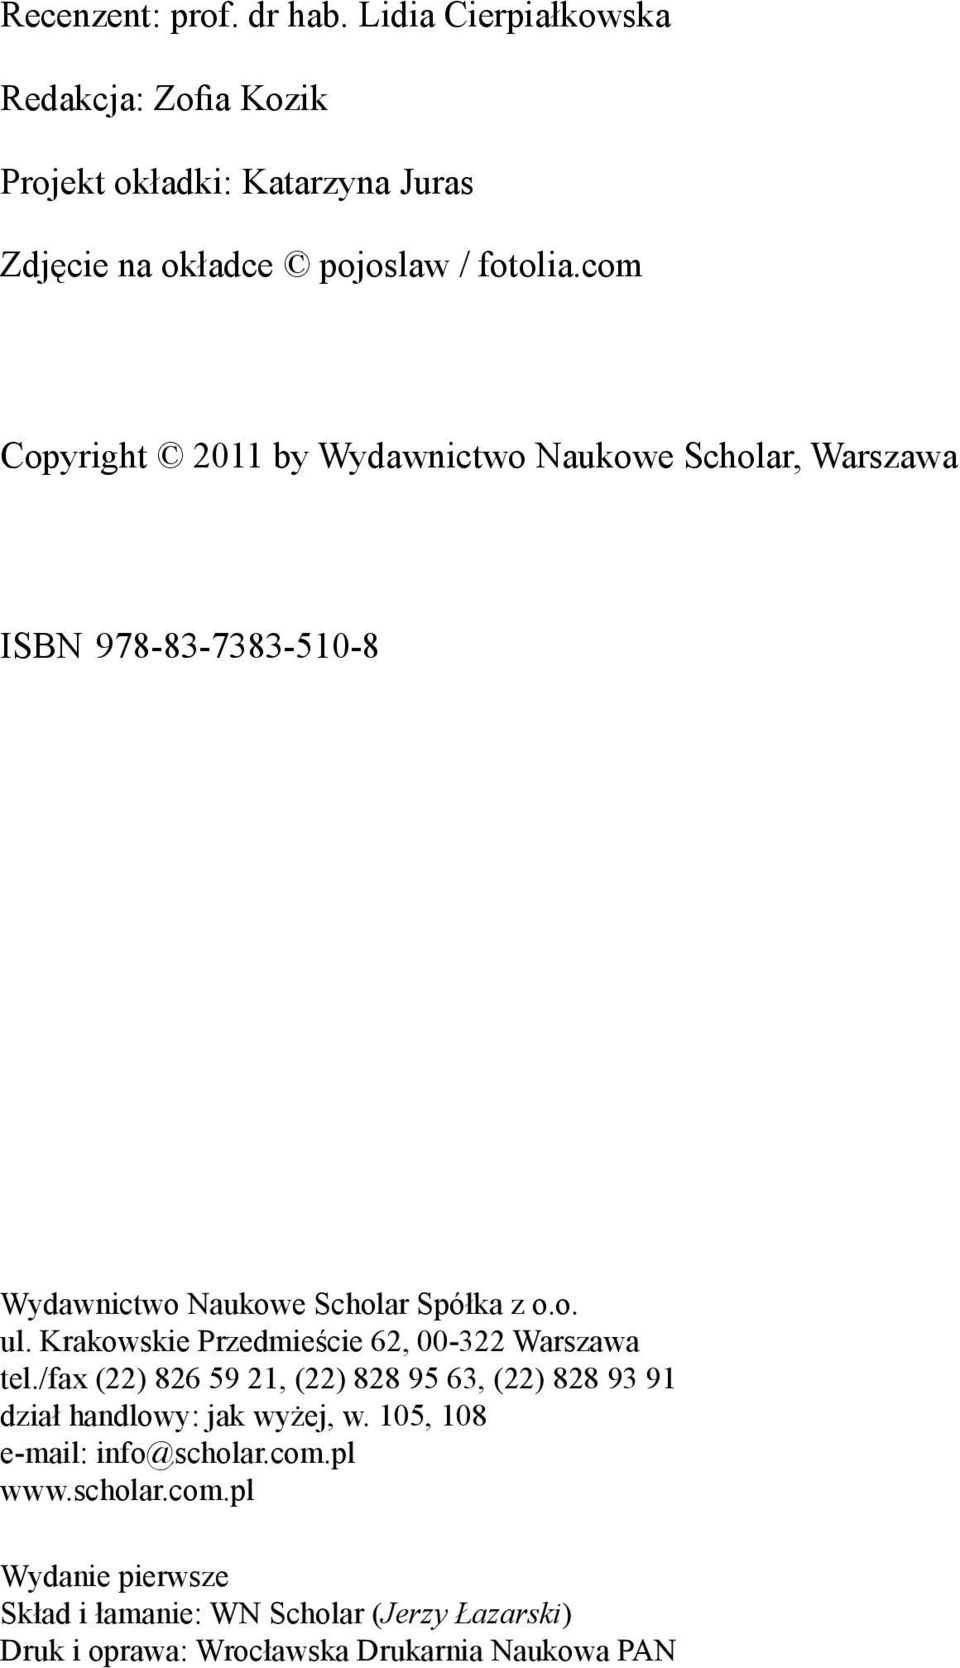 Krakowskie Przedmieście 62, 00-322 Warszawa tel./fax (22) 826 59 21, (22) 828 95 63, (22) 828 93 91 dział handlowy: jak wyżej, w.